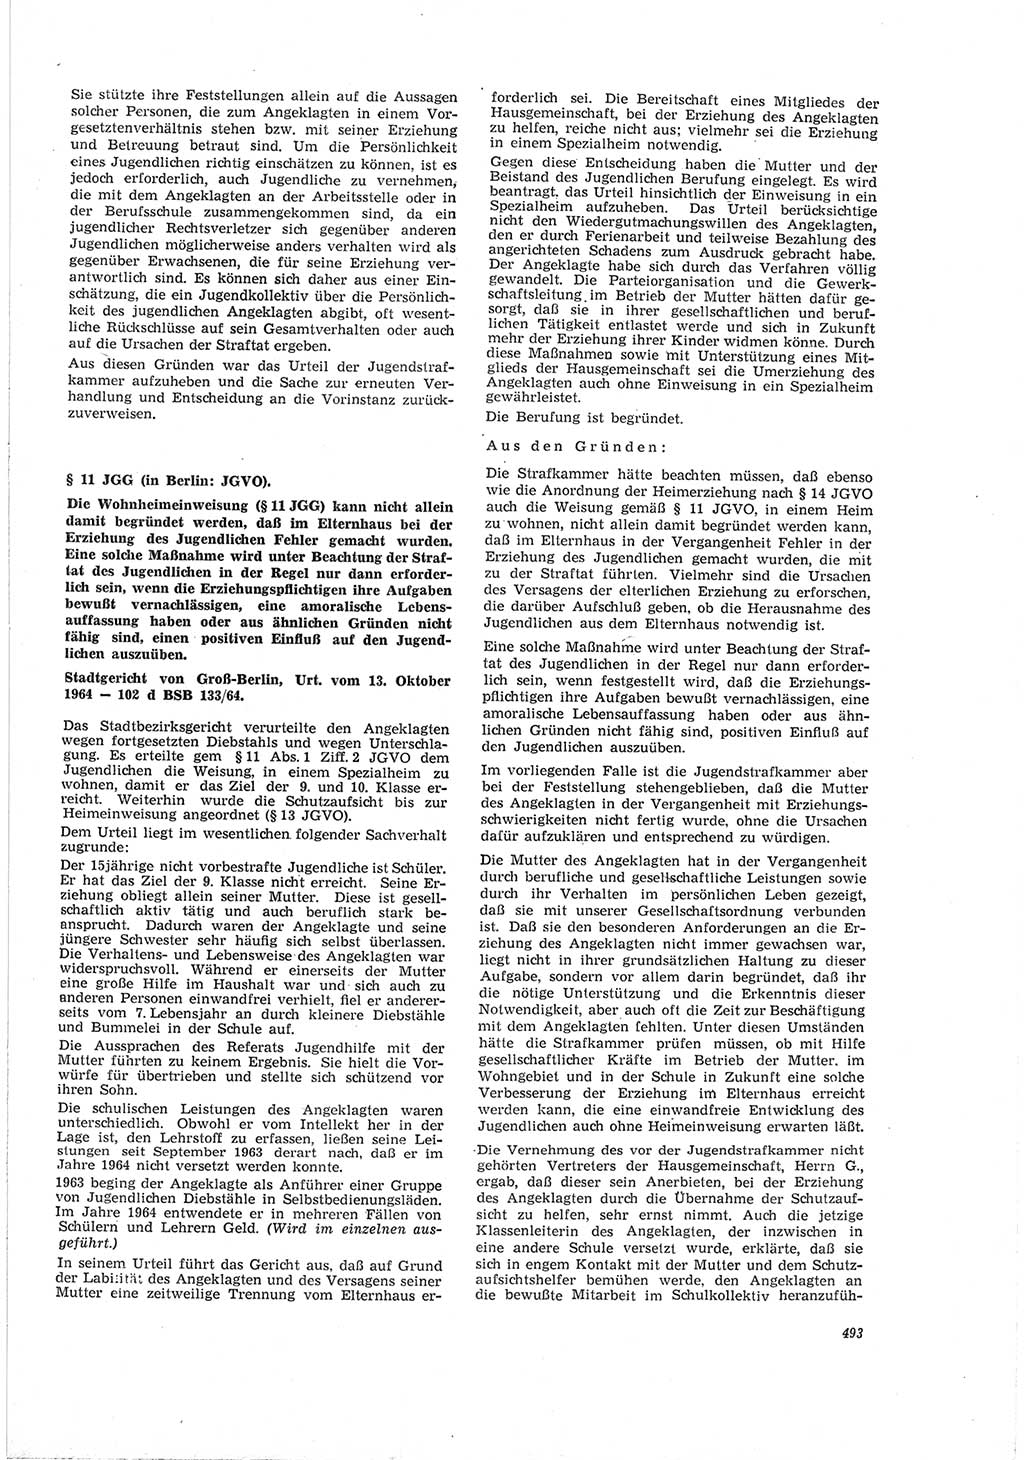 Neue Justiz (NJ), Zeitschrift für Recht und Rechtswissenschaft [Deutsche Demokratische Republik (DDR)], 19. Jahrgang 1965, Seite 493 (NJ DDR 1965, S. 493)